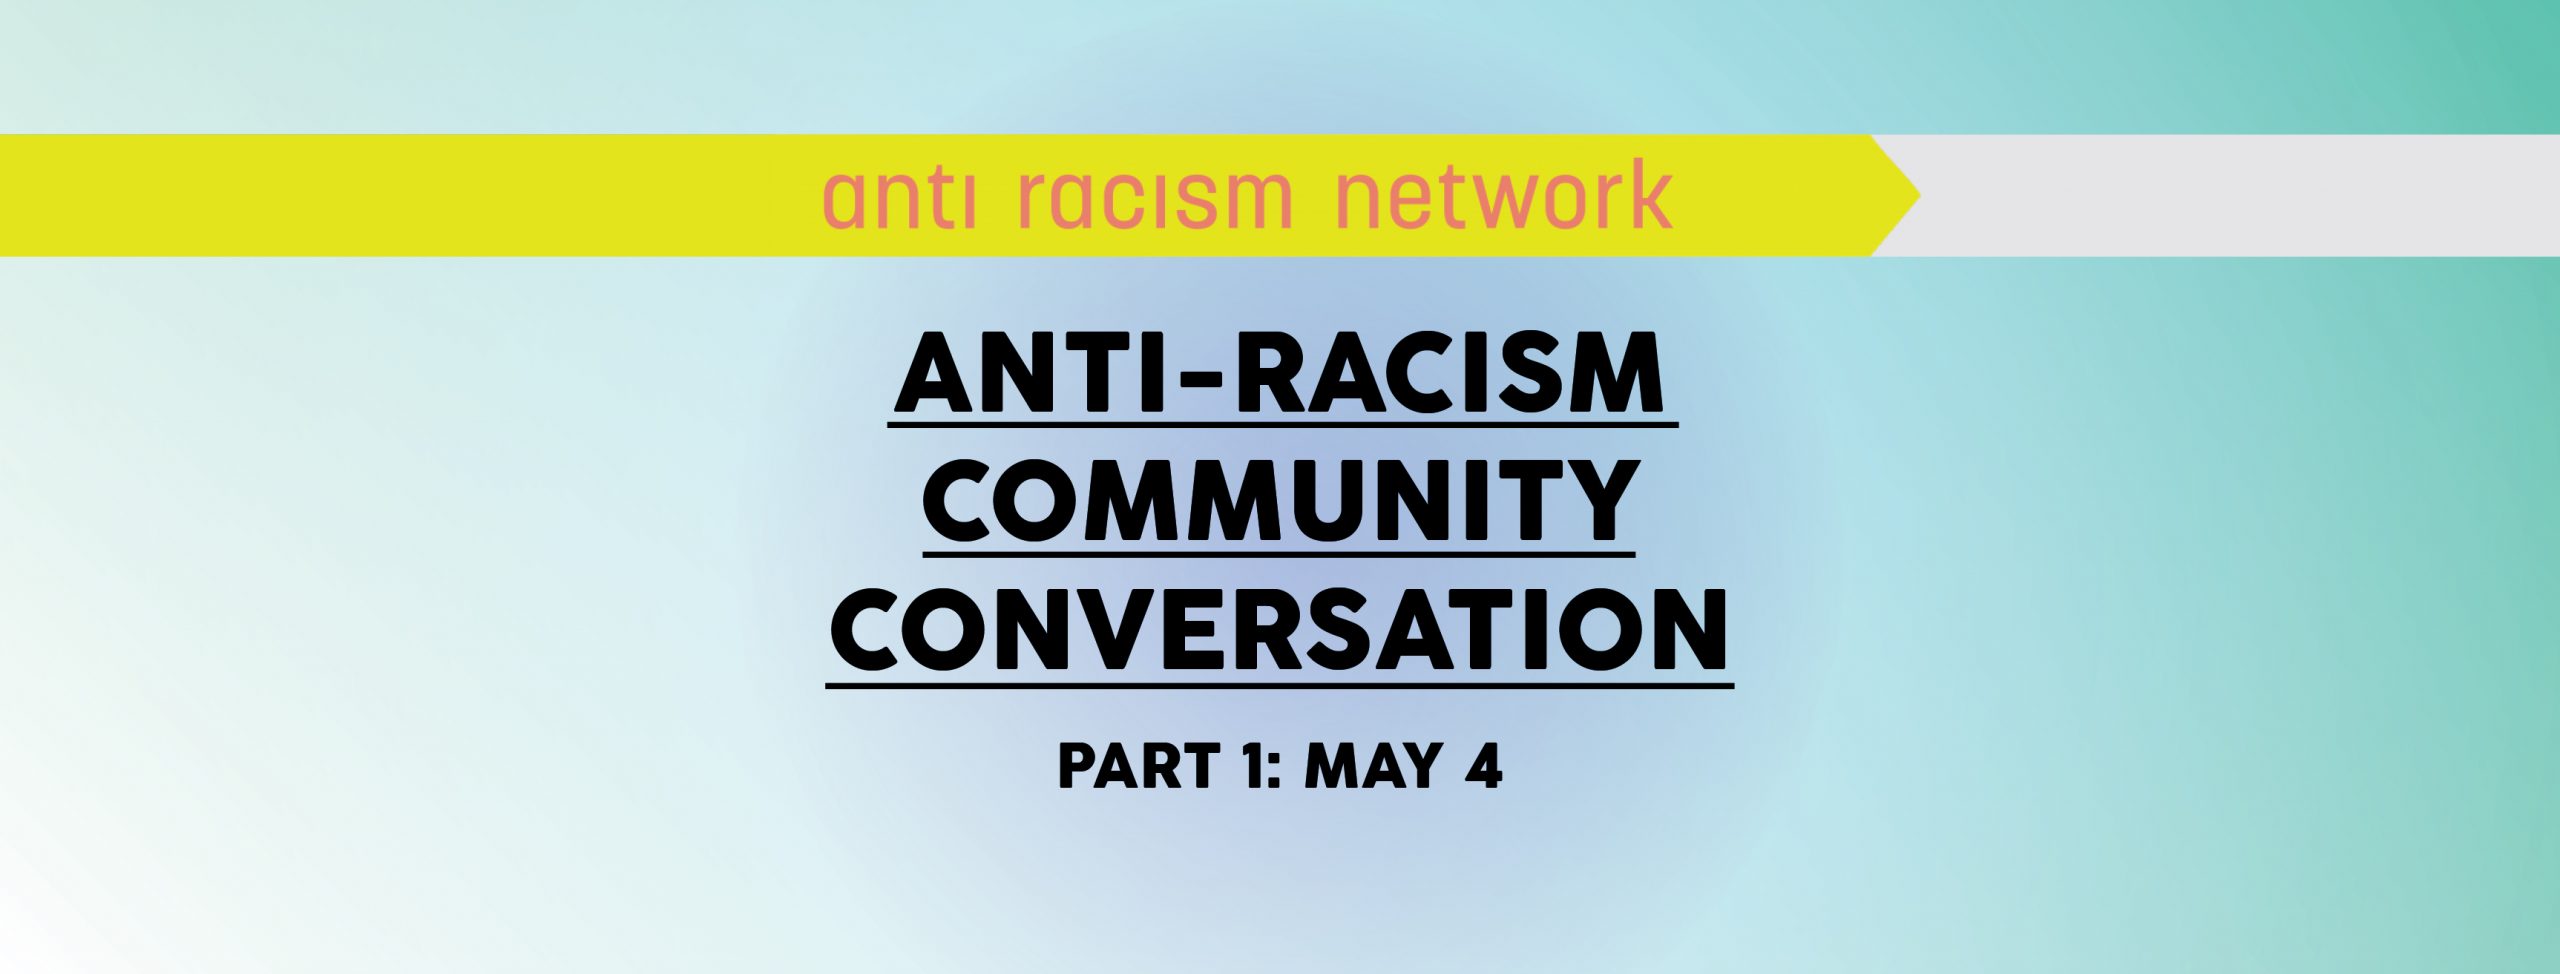 Anti-Racism Community Conversation (Part 1)